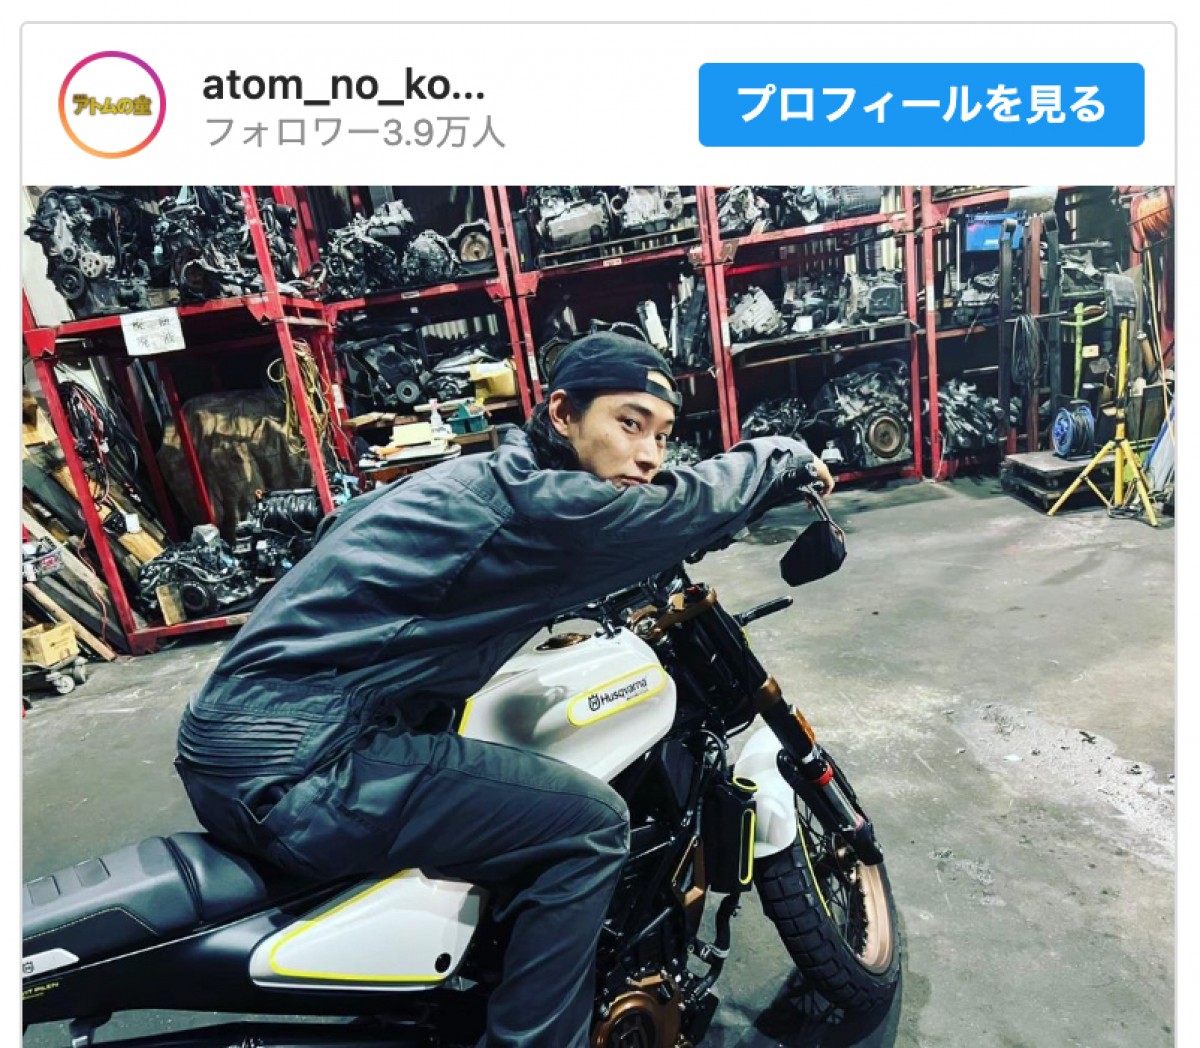 山崎賢人、バイクにまたがるワイルドな姿に「後ろに乗せてくれ！」「かっこよすぎ」の声